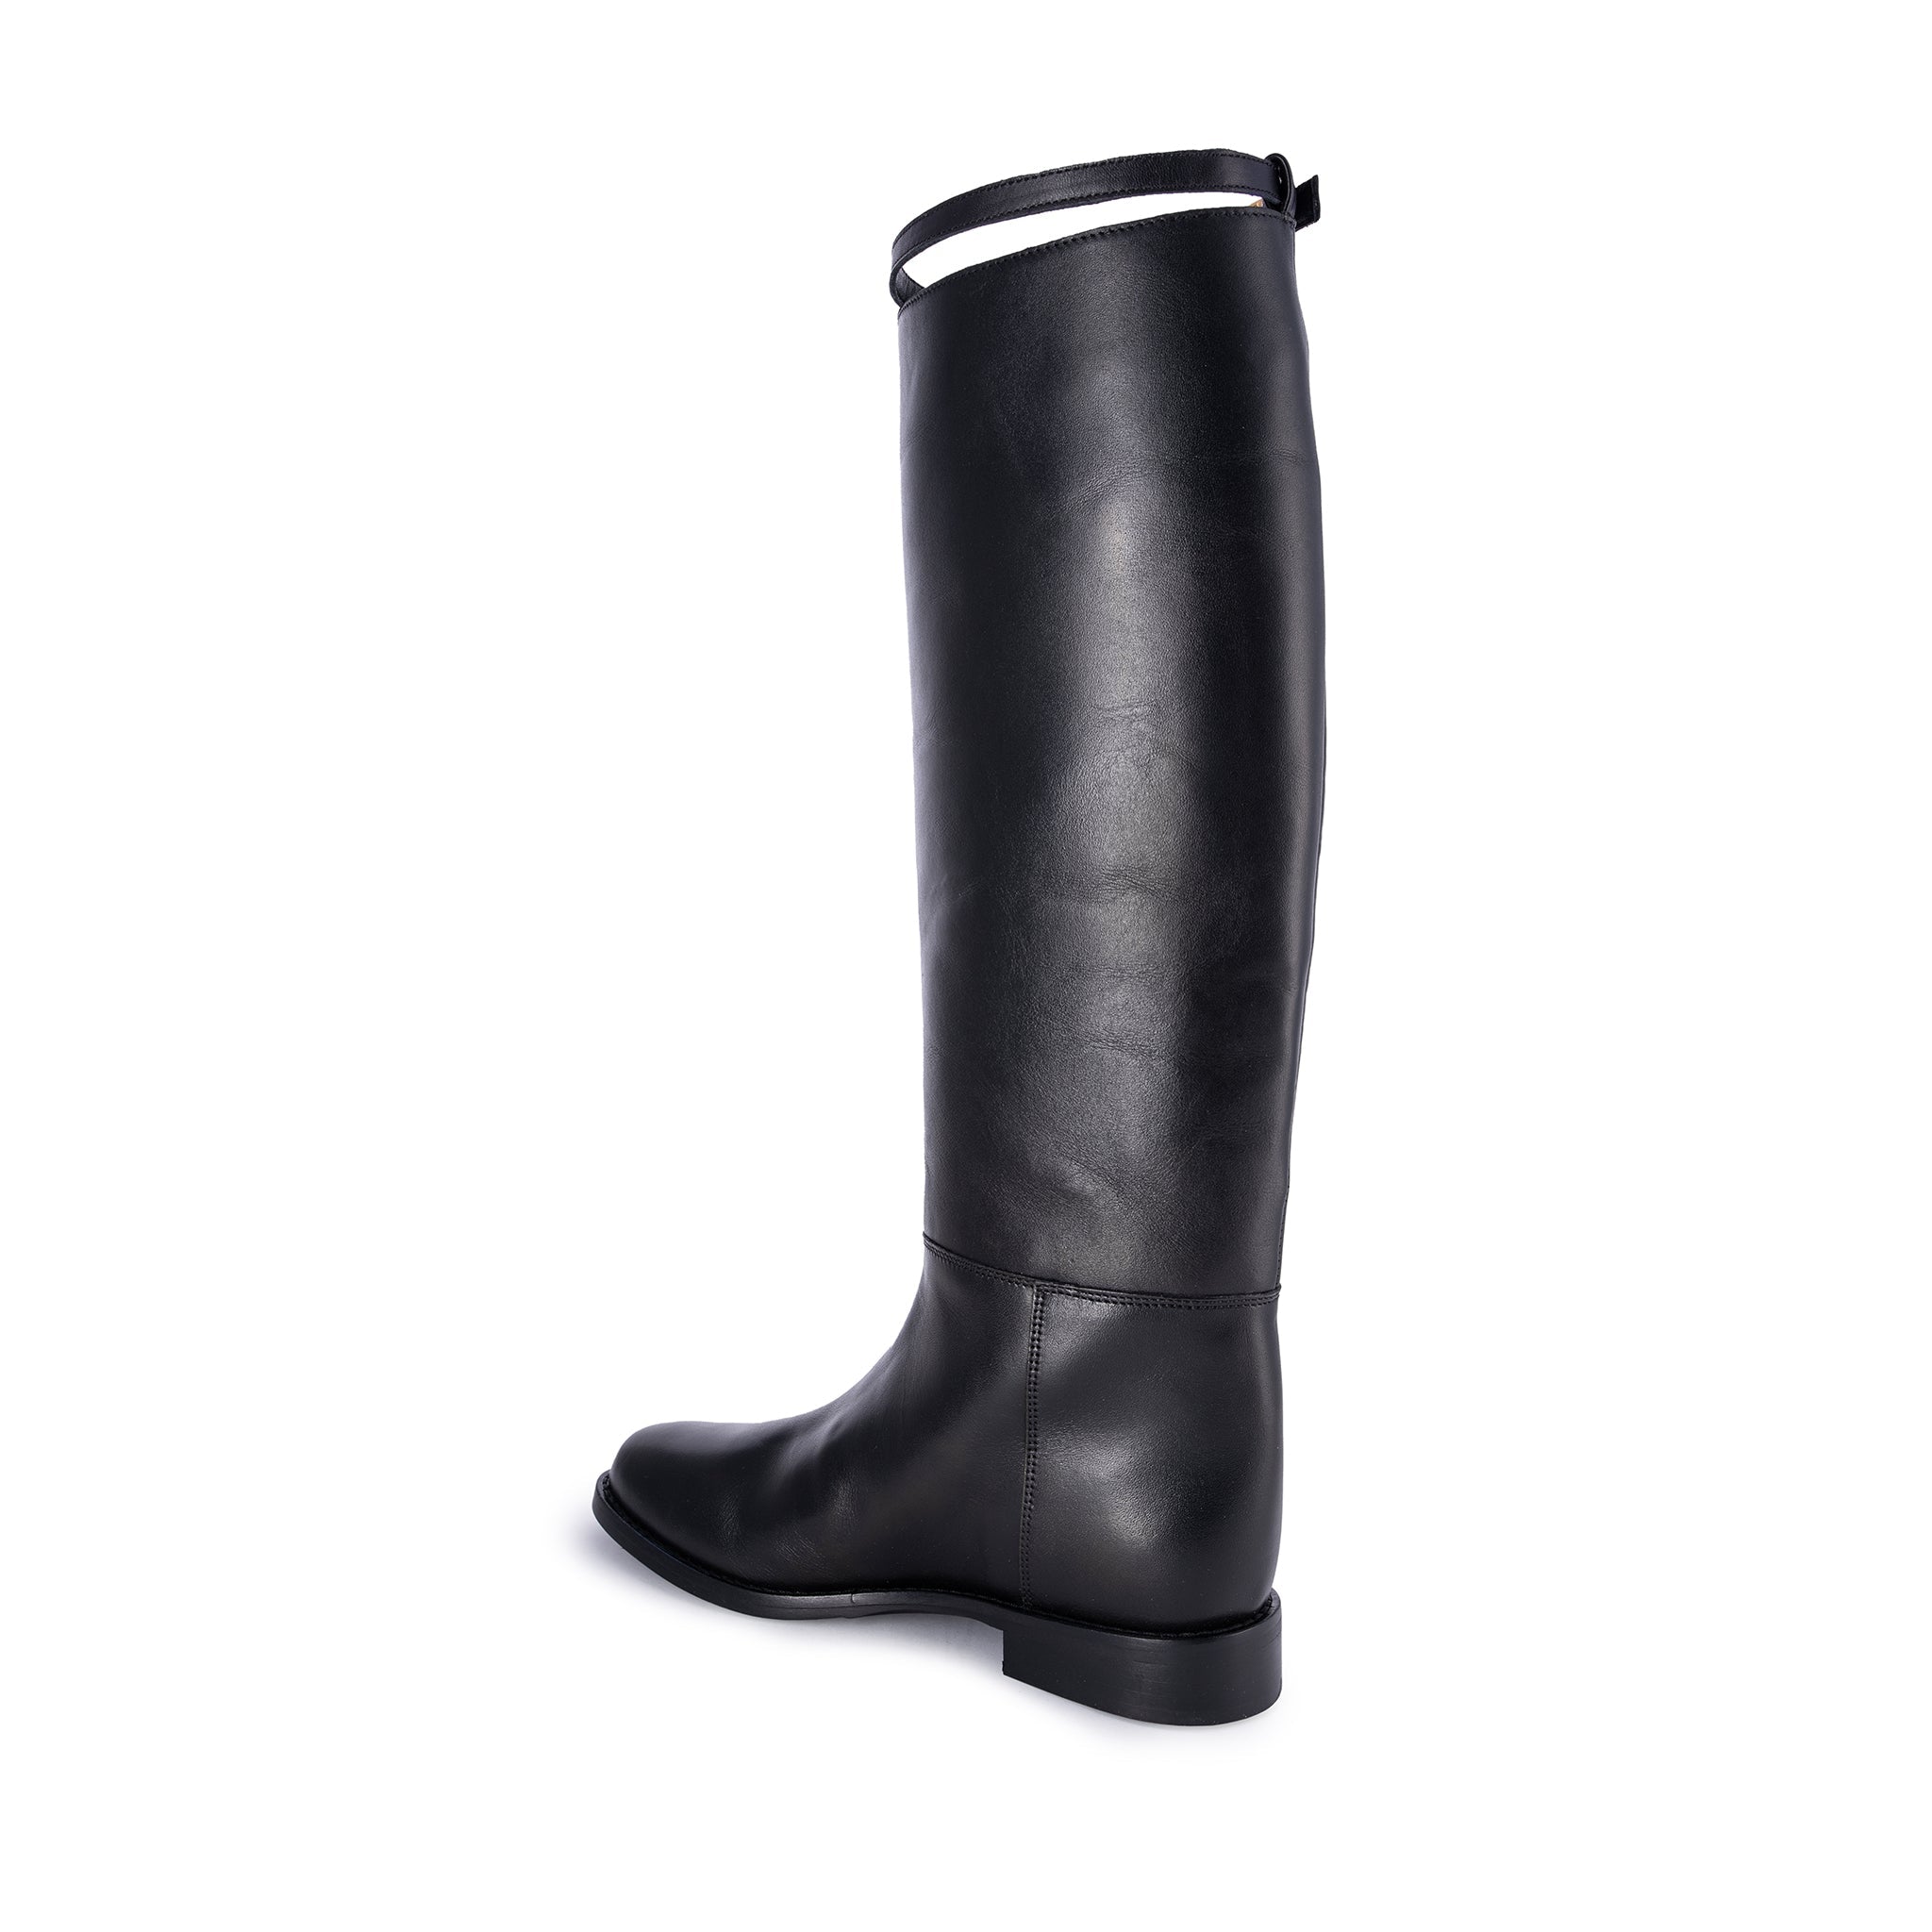 Oscar Black Strap High Boots OSCAR-CINTURINO-VITELLO - 3